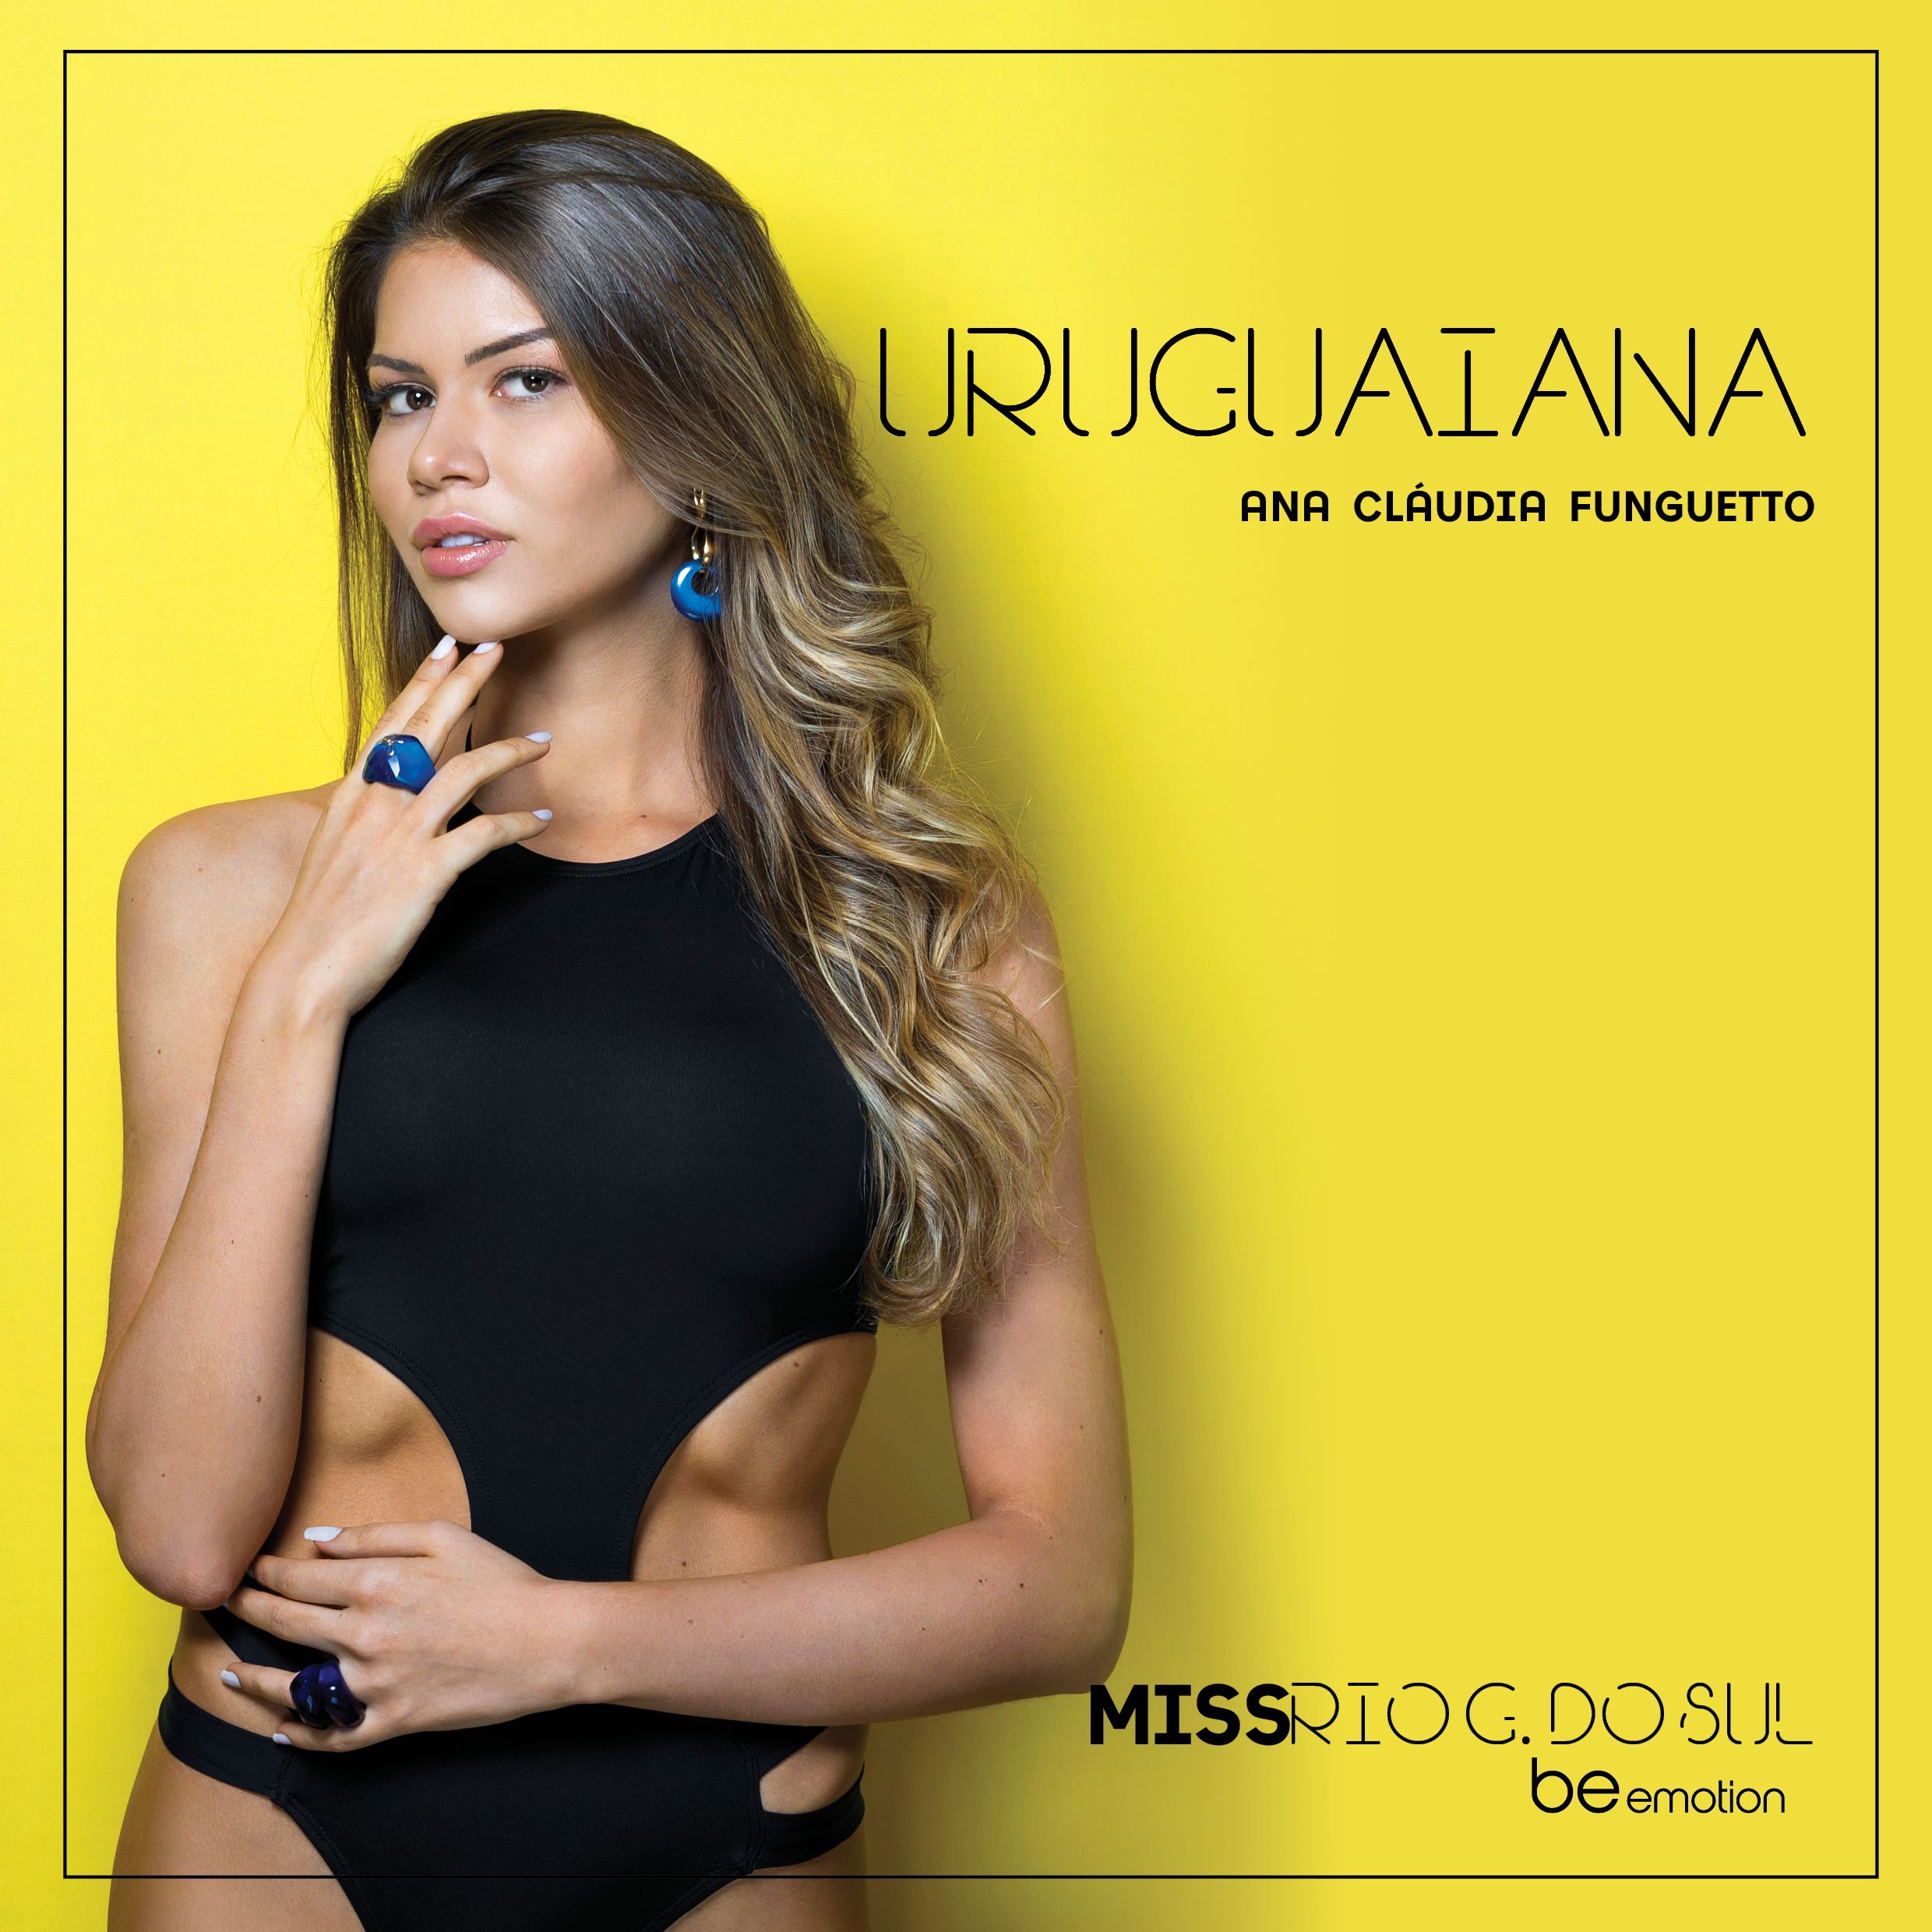 Conheça a Miss Uruguaiana 2018, Ana Cláudia Funghetto